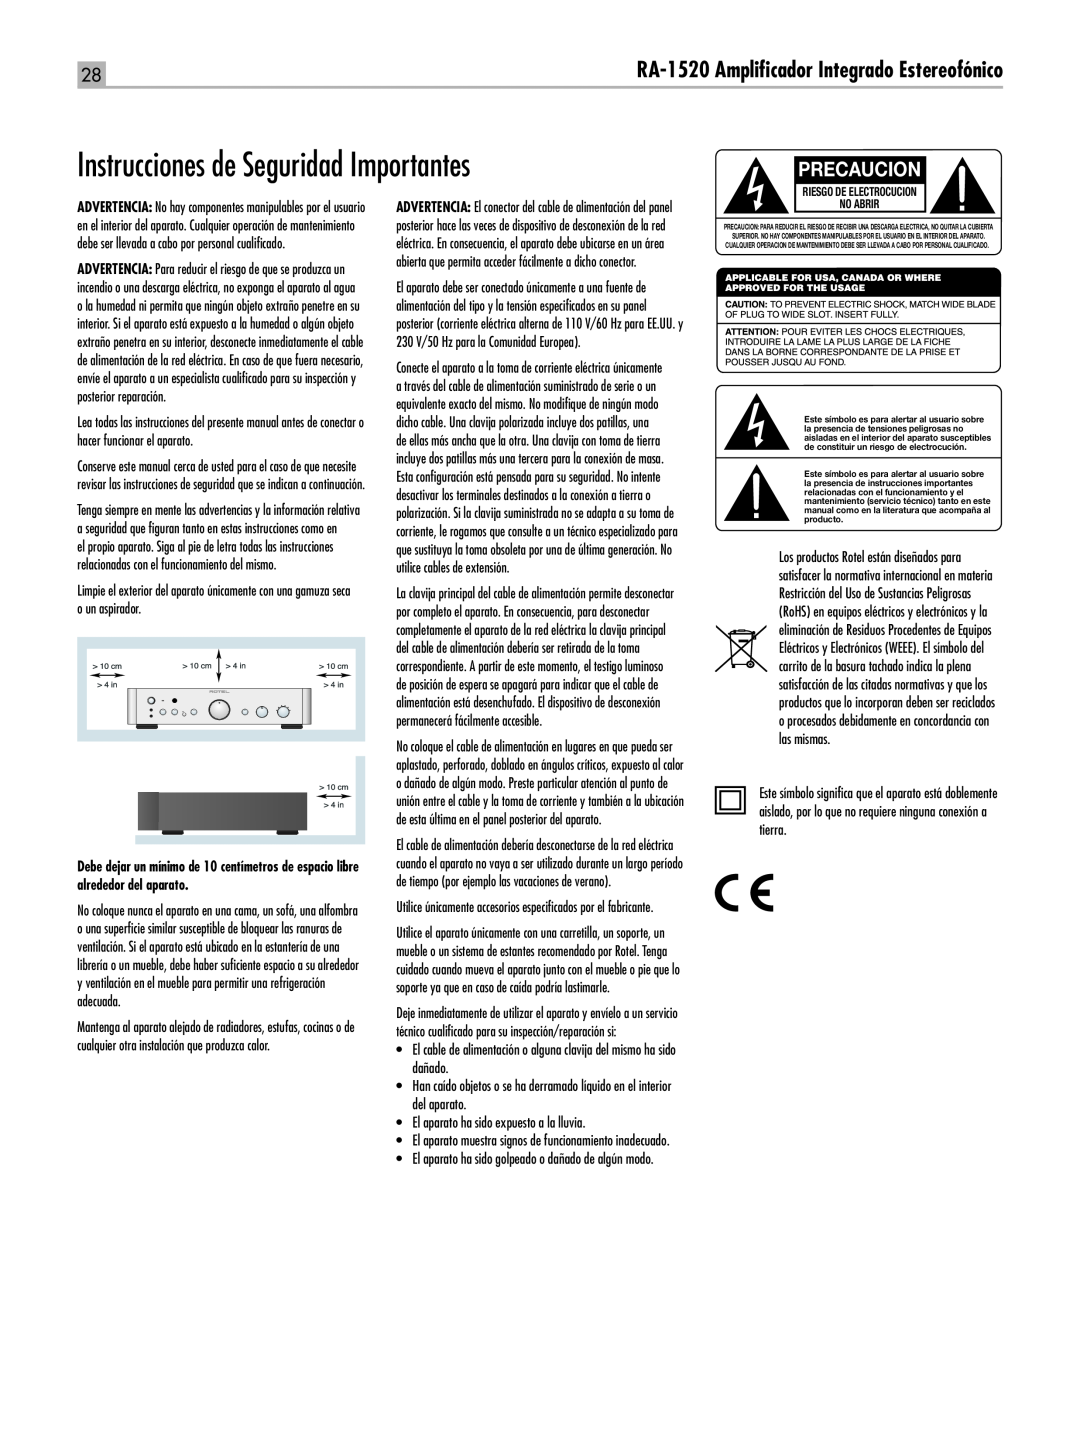 Rotel RA-1520 owner manual Instrucciones de Seguridad Importantes, Precaucion, RA‑1520 Amplificador Integrado Estereofónico 